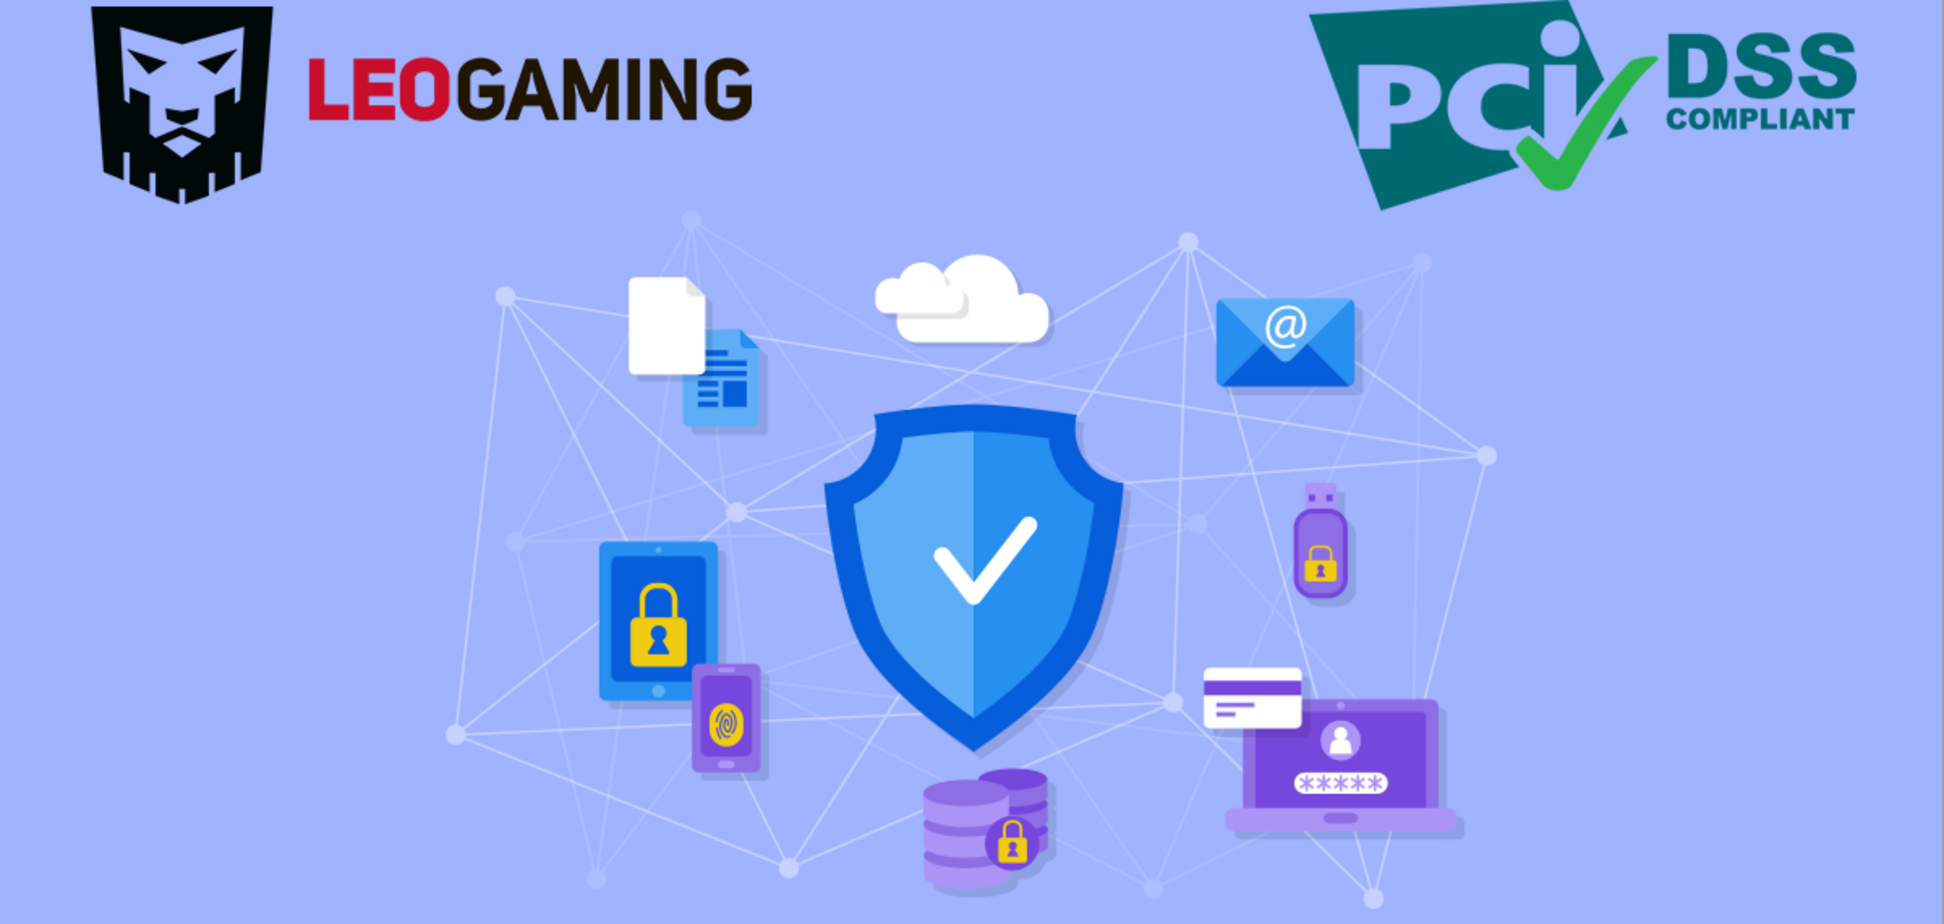 Компания LeoGaming получила сертификат безопасности платежей PCI DSS 3.2